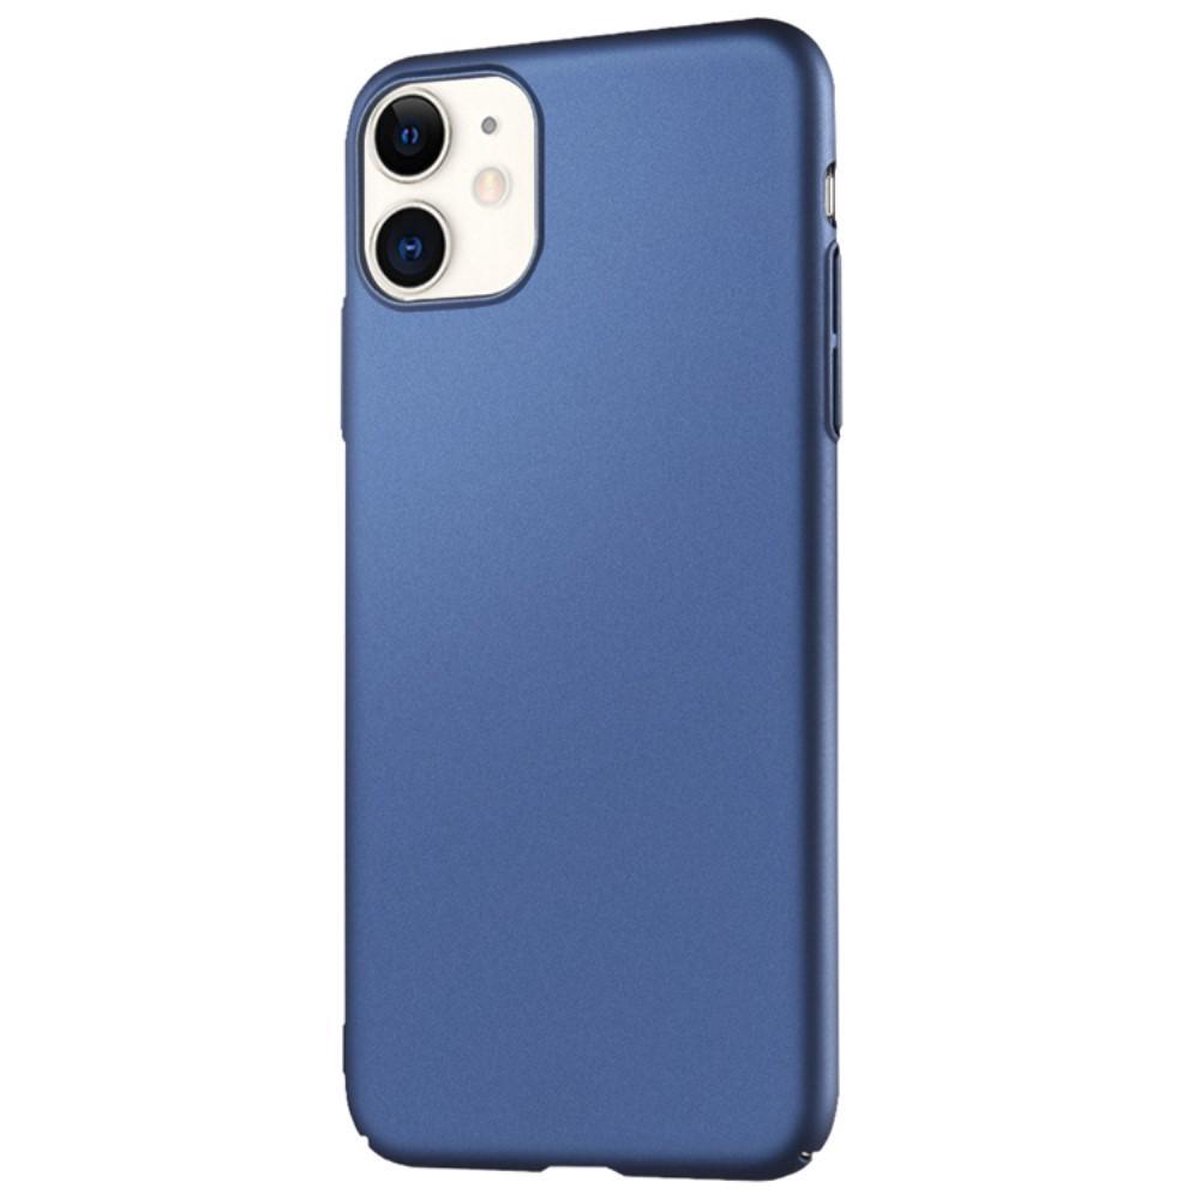 Hardcase met silky touch voor iPhone 11 6.1 inch - Donkerblauw